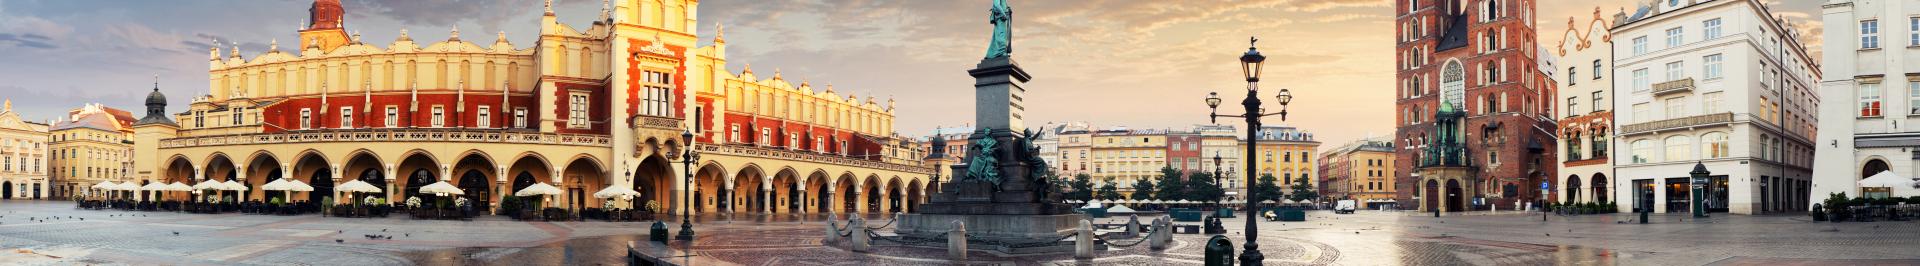 Pologne - Cracovie